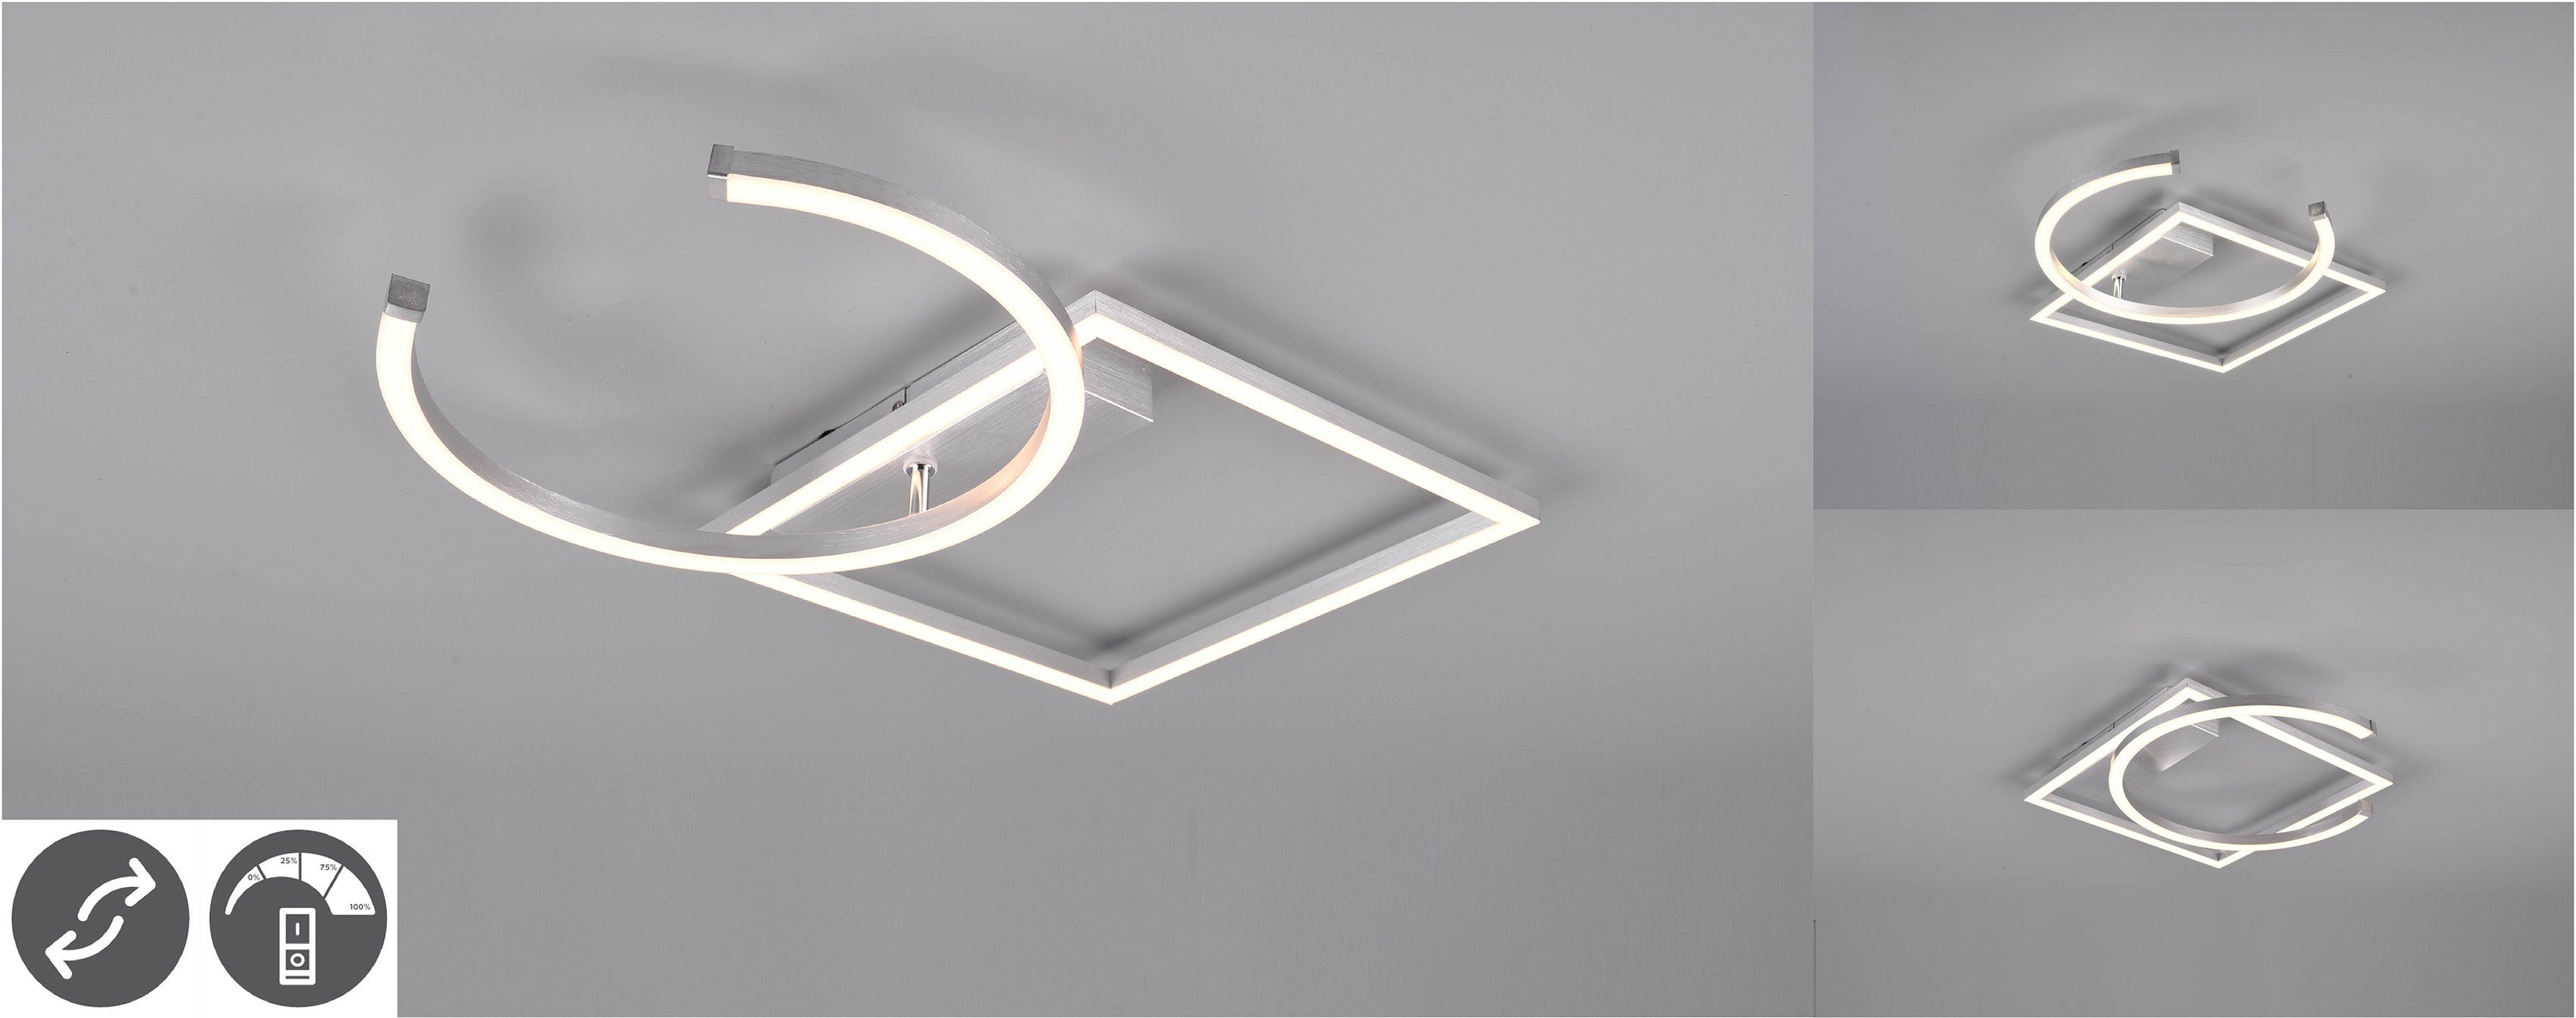 TRIO Leuchten LED Deckenleuchte Deckenmontage Wand-und zur mehrere PIVOT, LED geeignet Warmweiß, über fest integriert, dimmbar, Helligkeitsstufen, Wandschalter